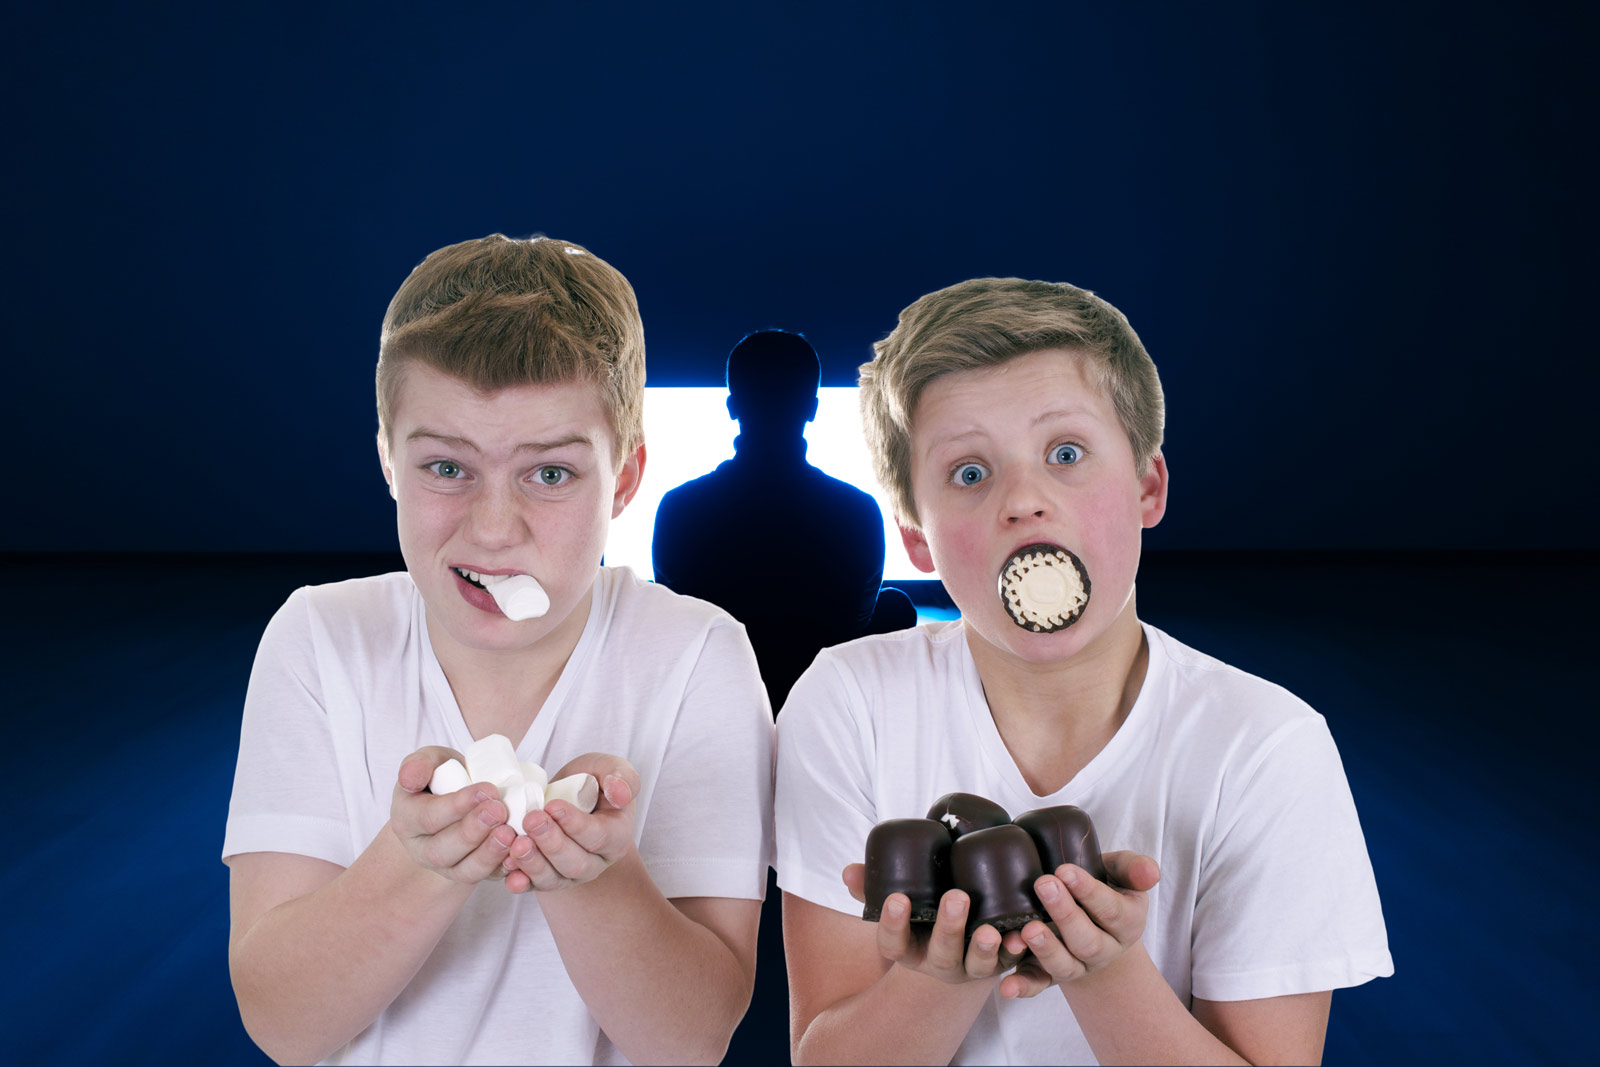 Zwei Jungs stopfen sich mit Süßigkeiten voll. Im Hintergrund läuft ein Fernseher auf den gebannt eine Person starrt.